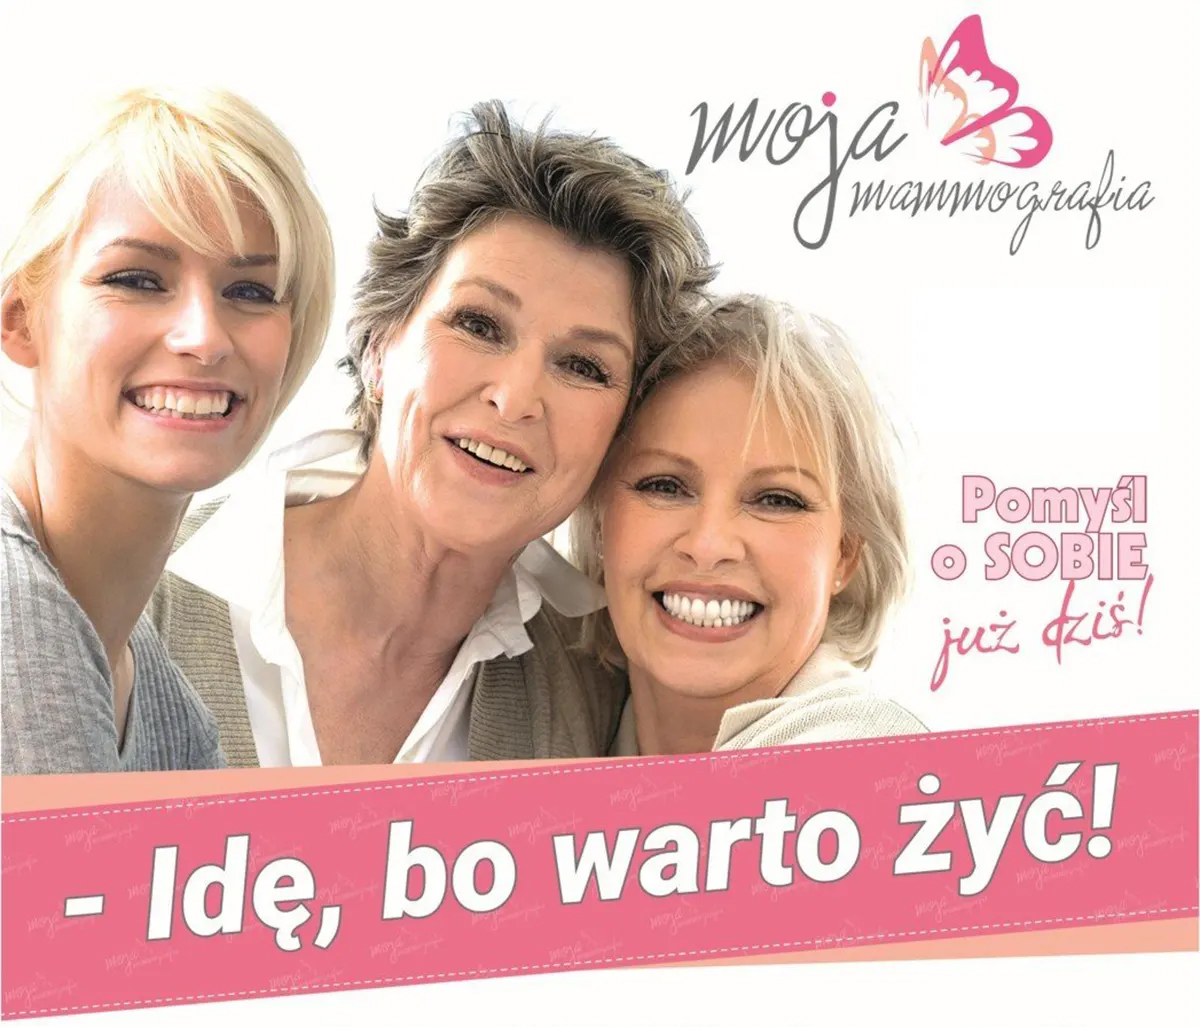 – Idę, bo warto żyć – bezpłatna mammografia w Stawiskach